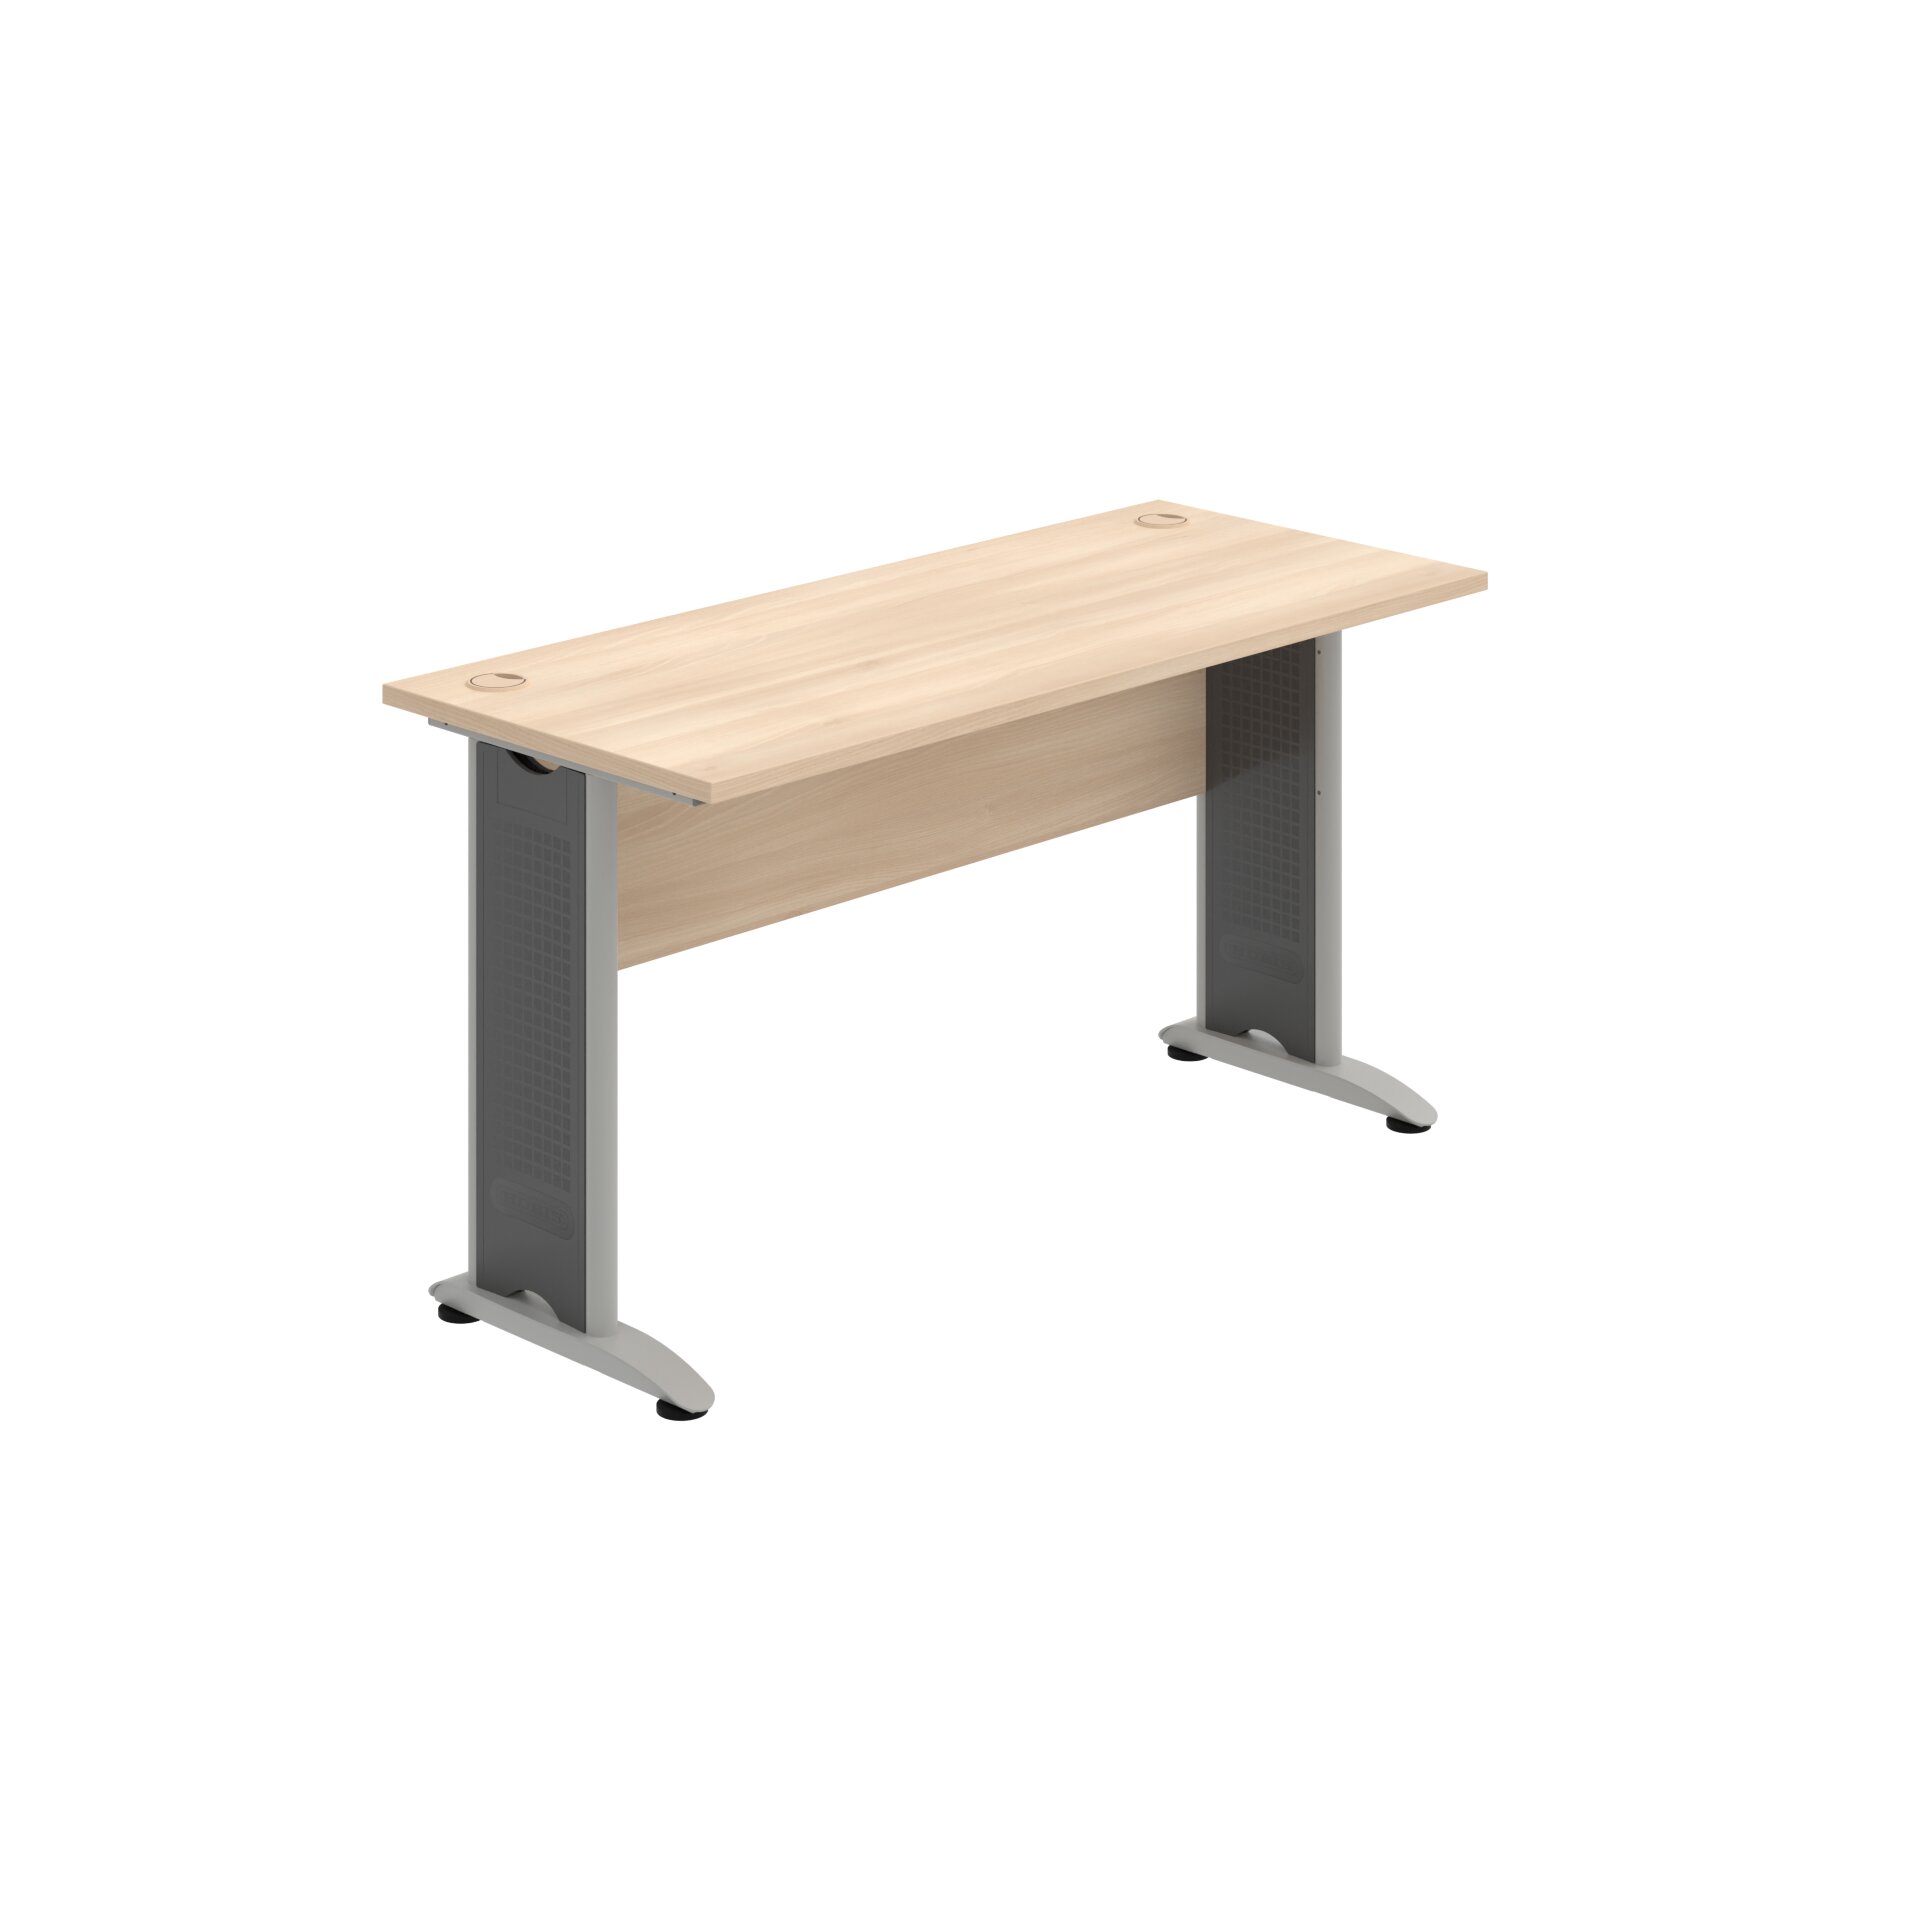 CE 1400 – Stůl pracovní rovný 140 cm, hl. 60 cm